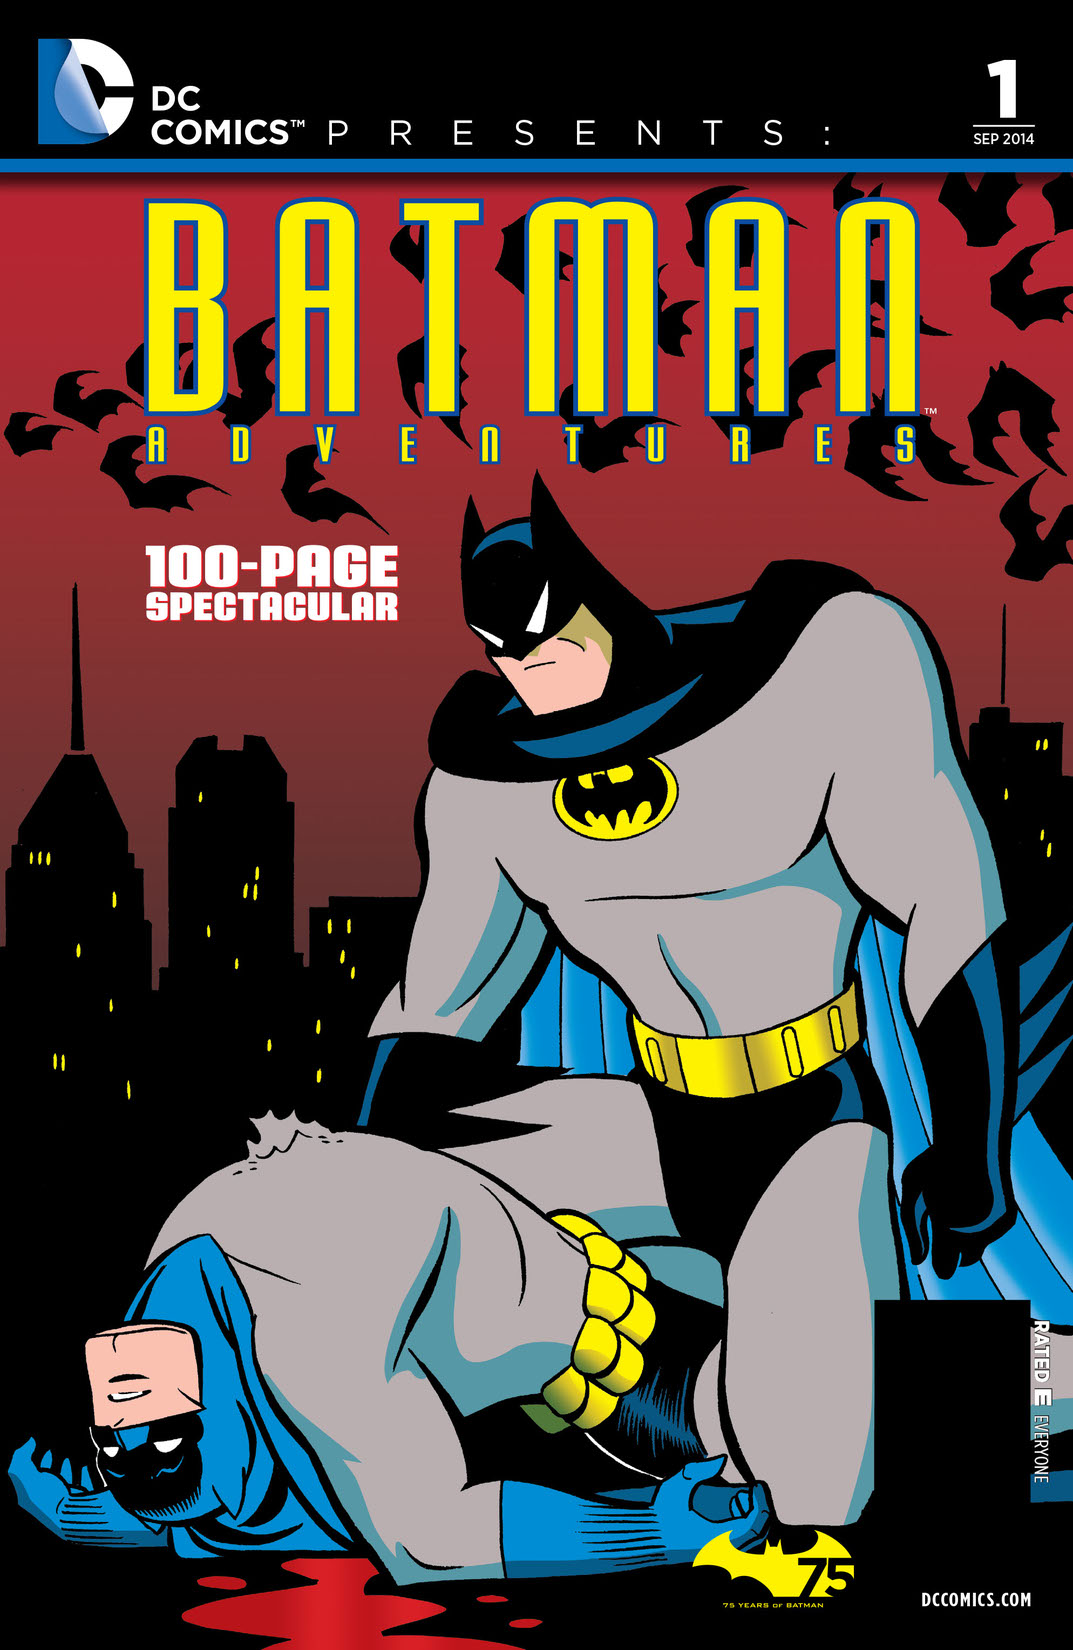 DC Comics Presents: Batman Adventures (2014-) #1 preview images